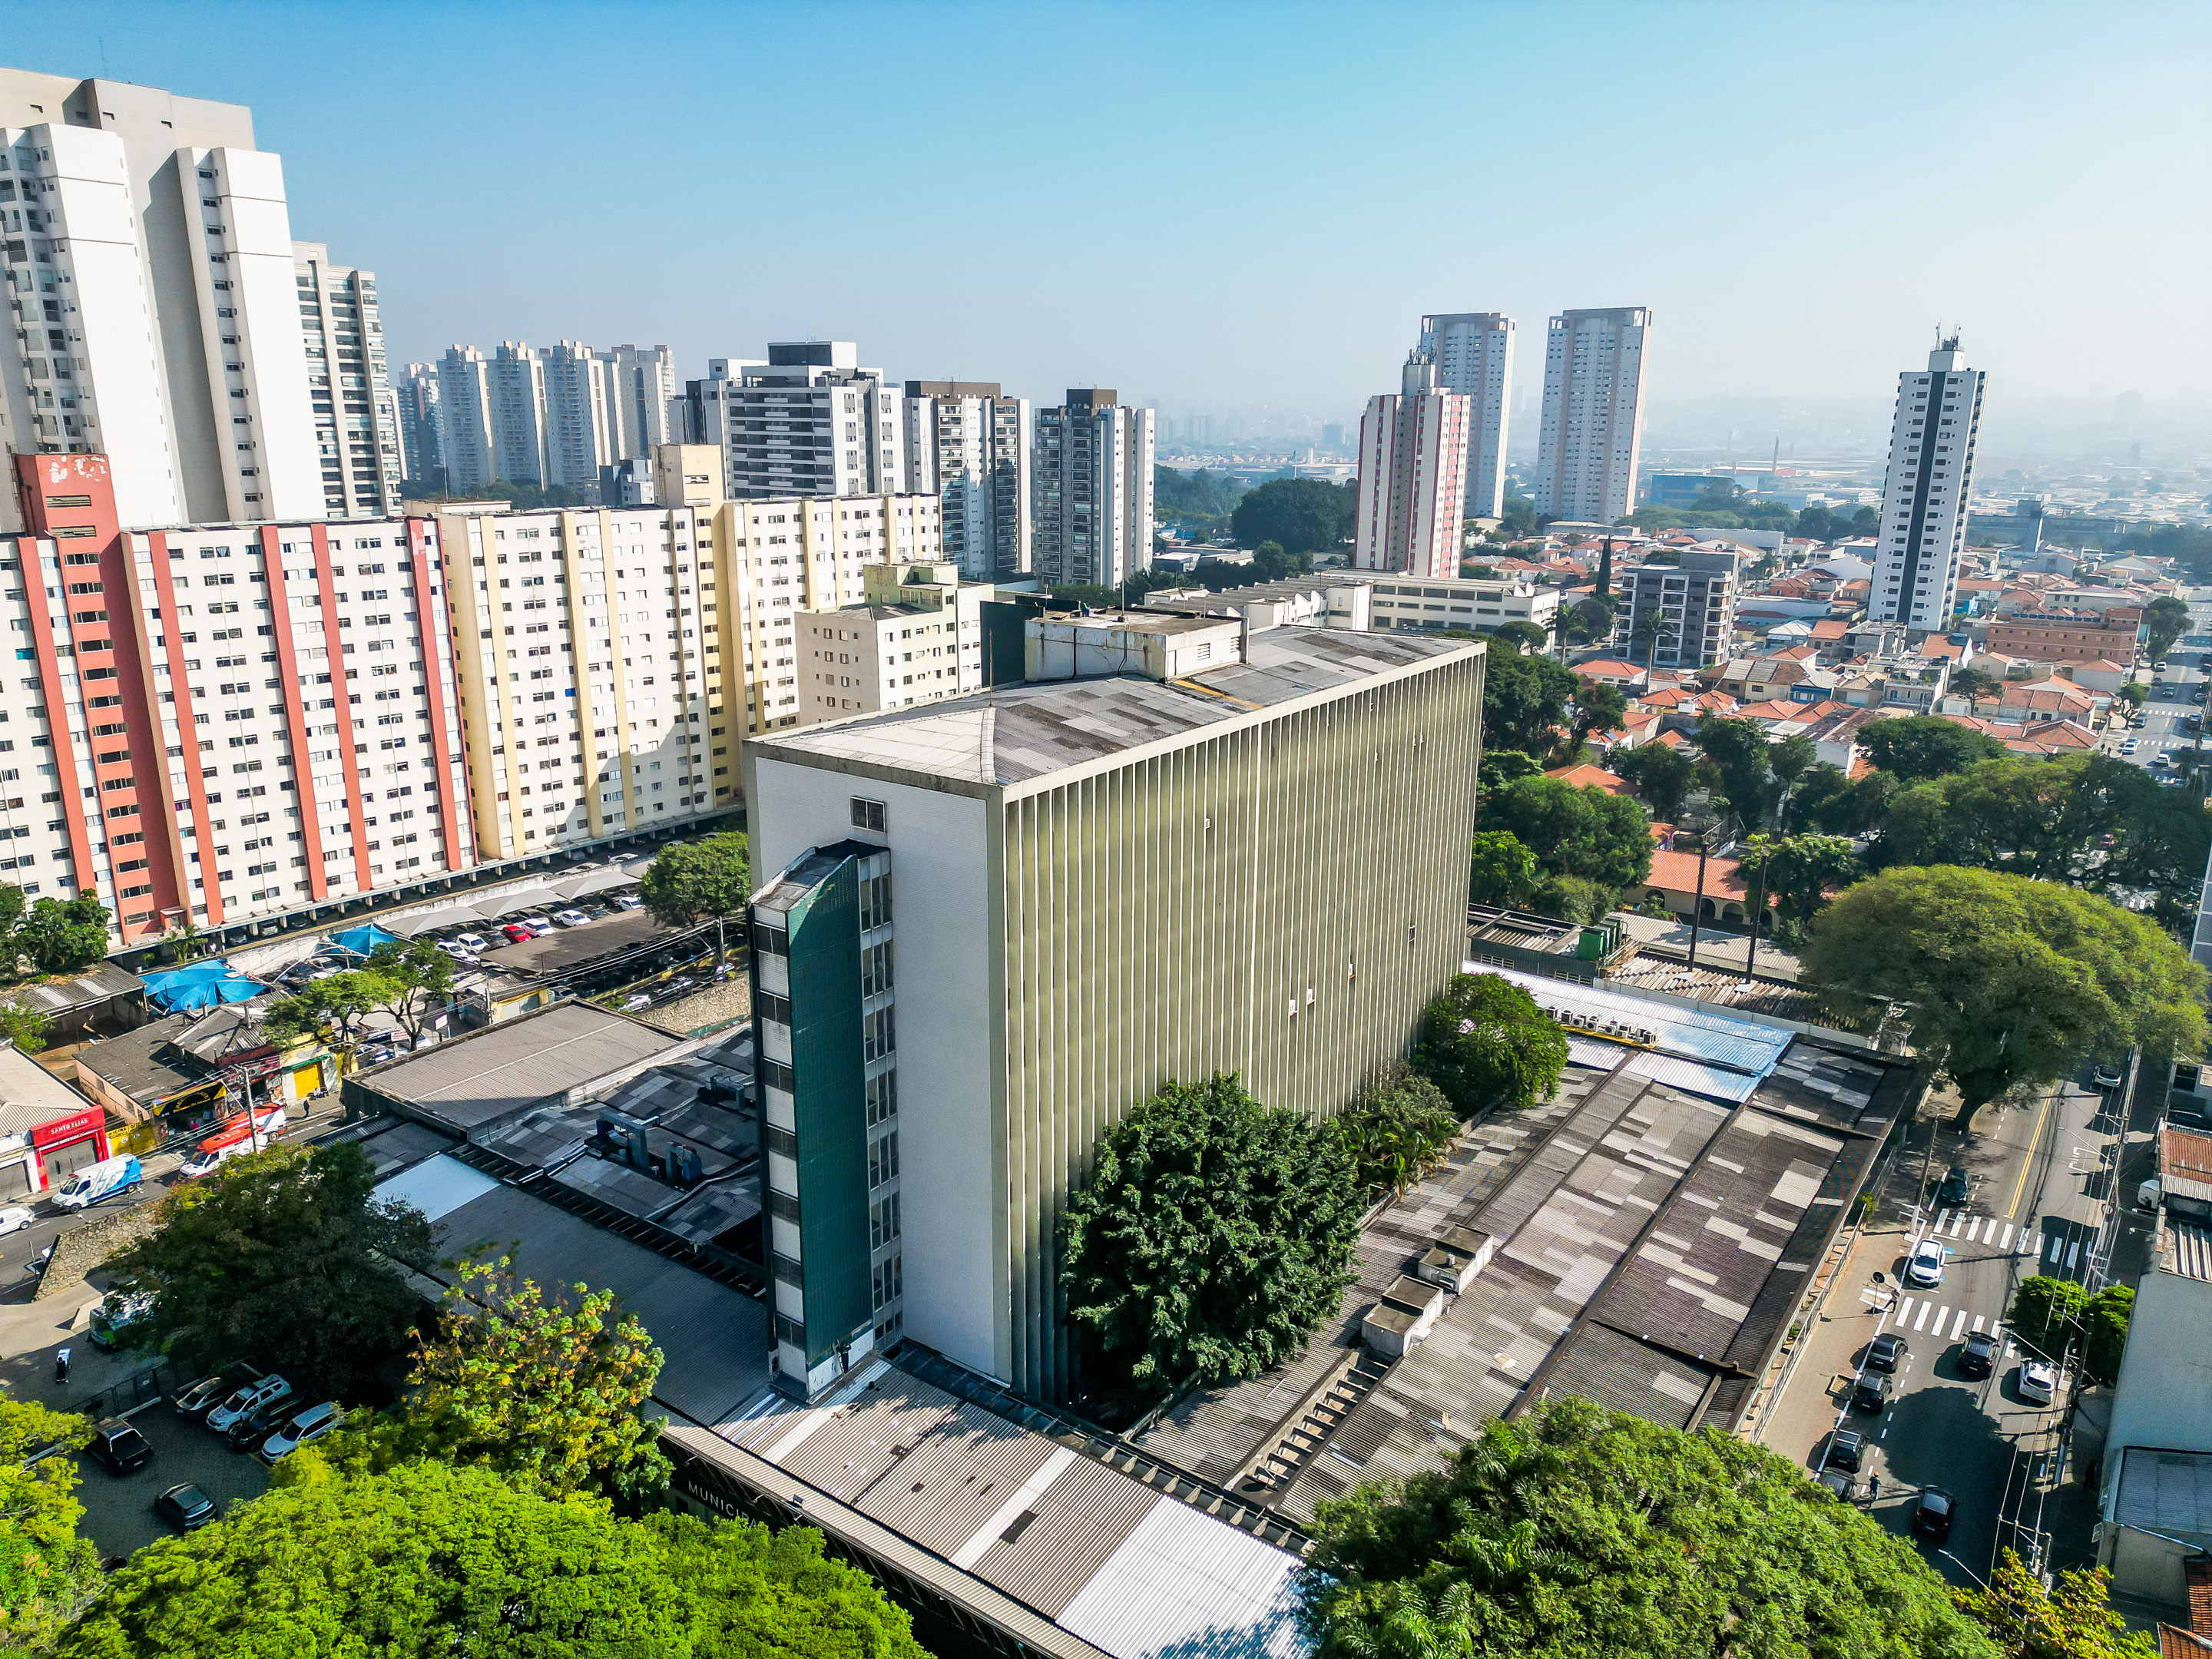 A foto mostra a vista aérea do Hospital Municipal do Tatuaé, um prédio grande, com cerca de sete andares; a visão é panorâmica, e  vemos outros prédios e casas em volta do hospital